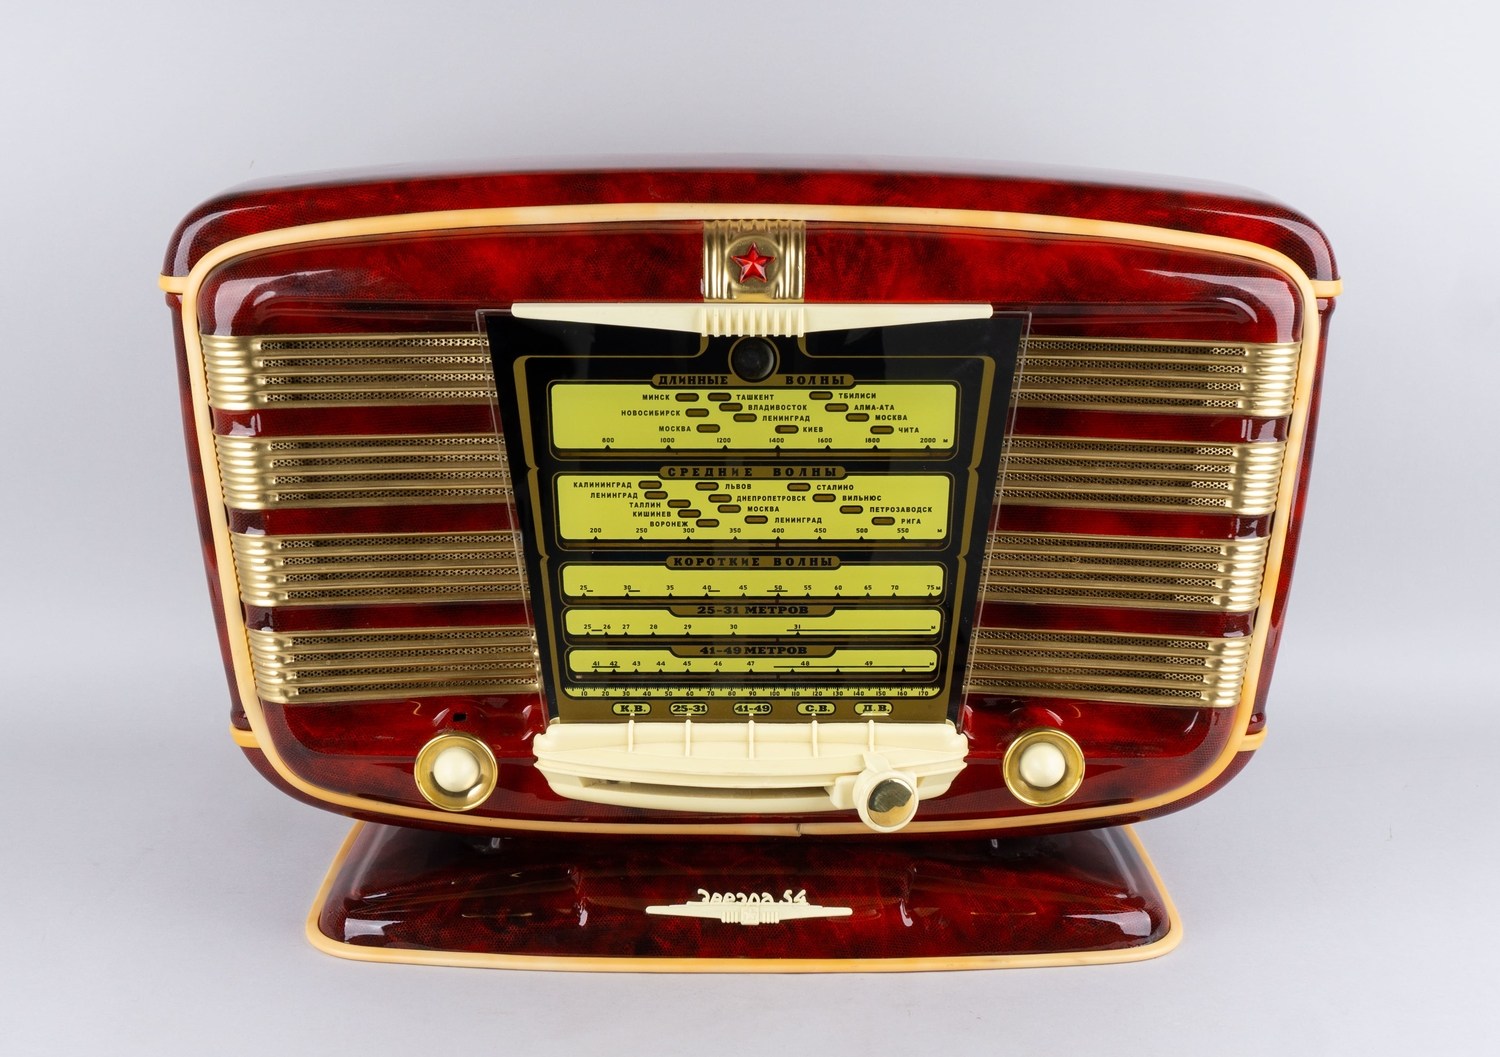 [РАБОЧИЙ] Сетевой ламповый радиоприёмник 2-го класса «Звезда»  - 54. СССР, 1950-е годы.